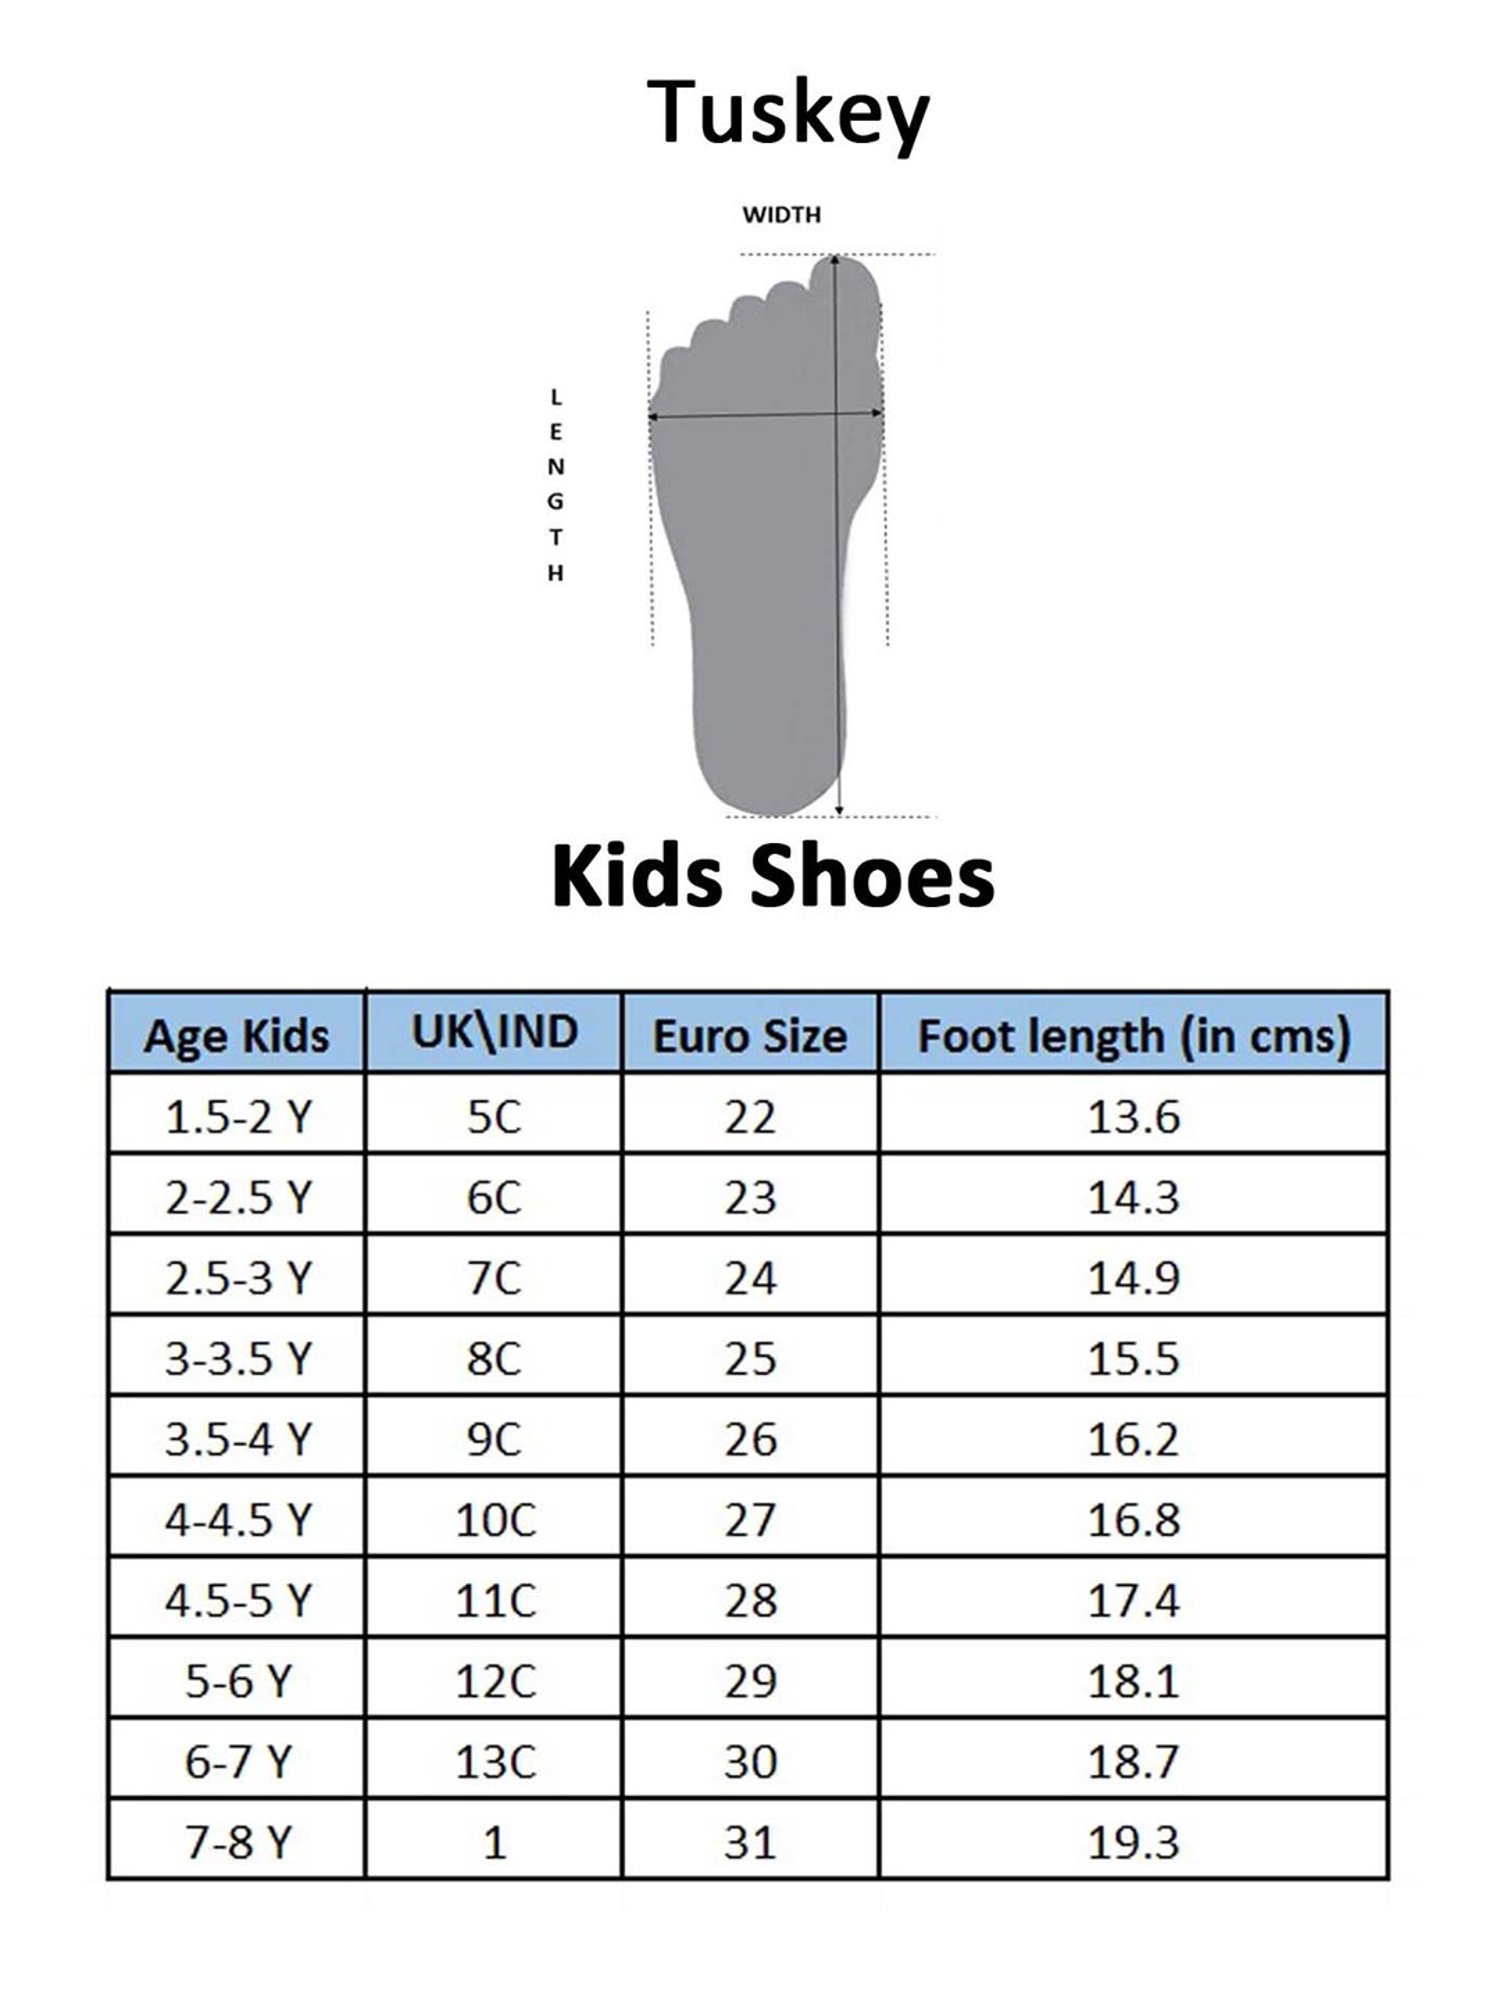 6c shoe size age